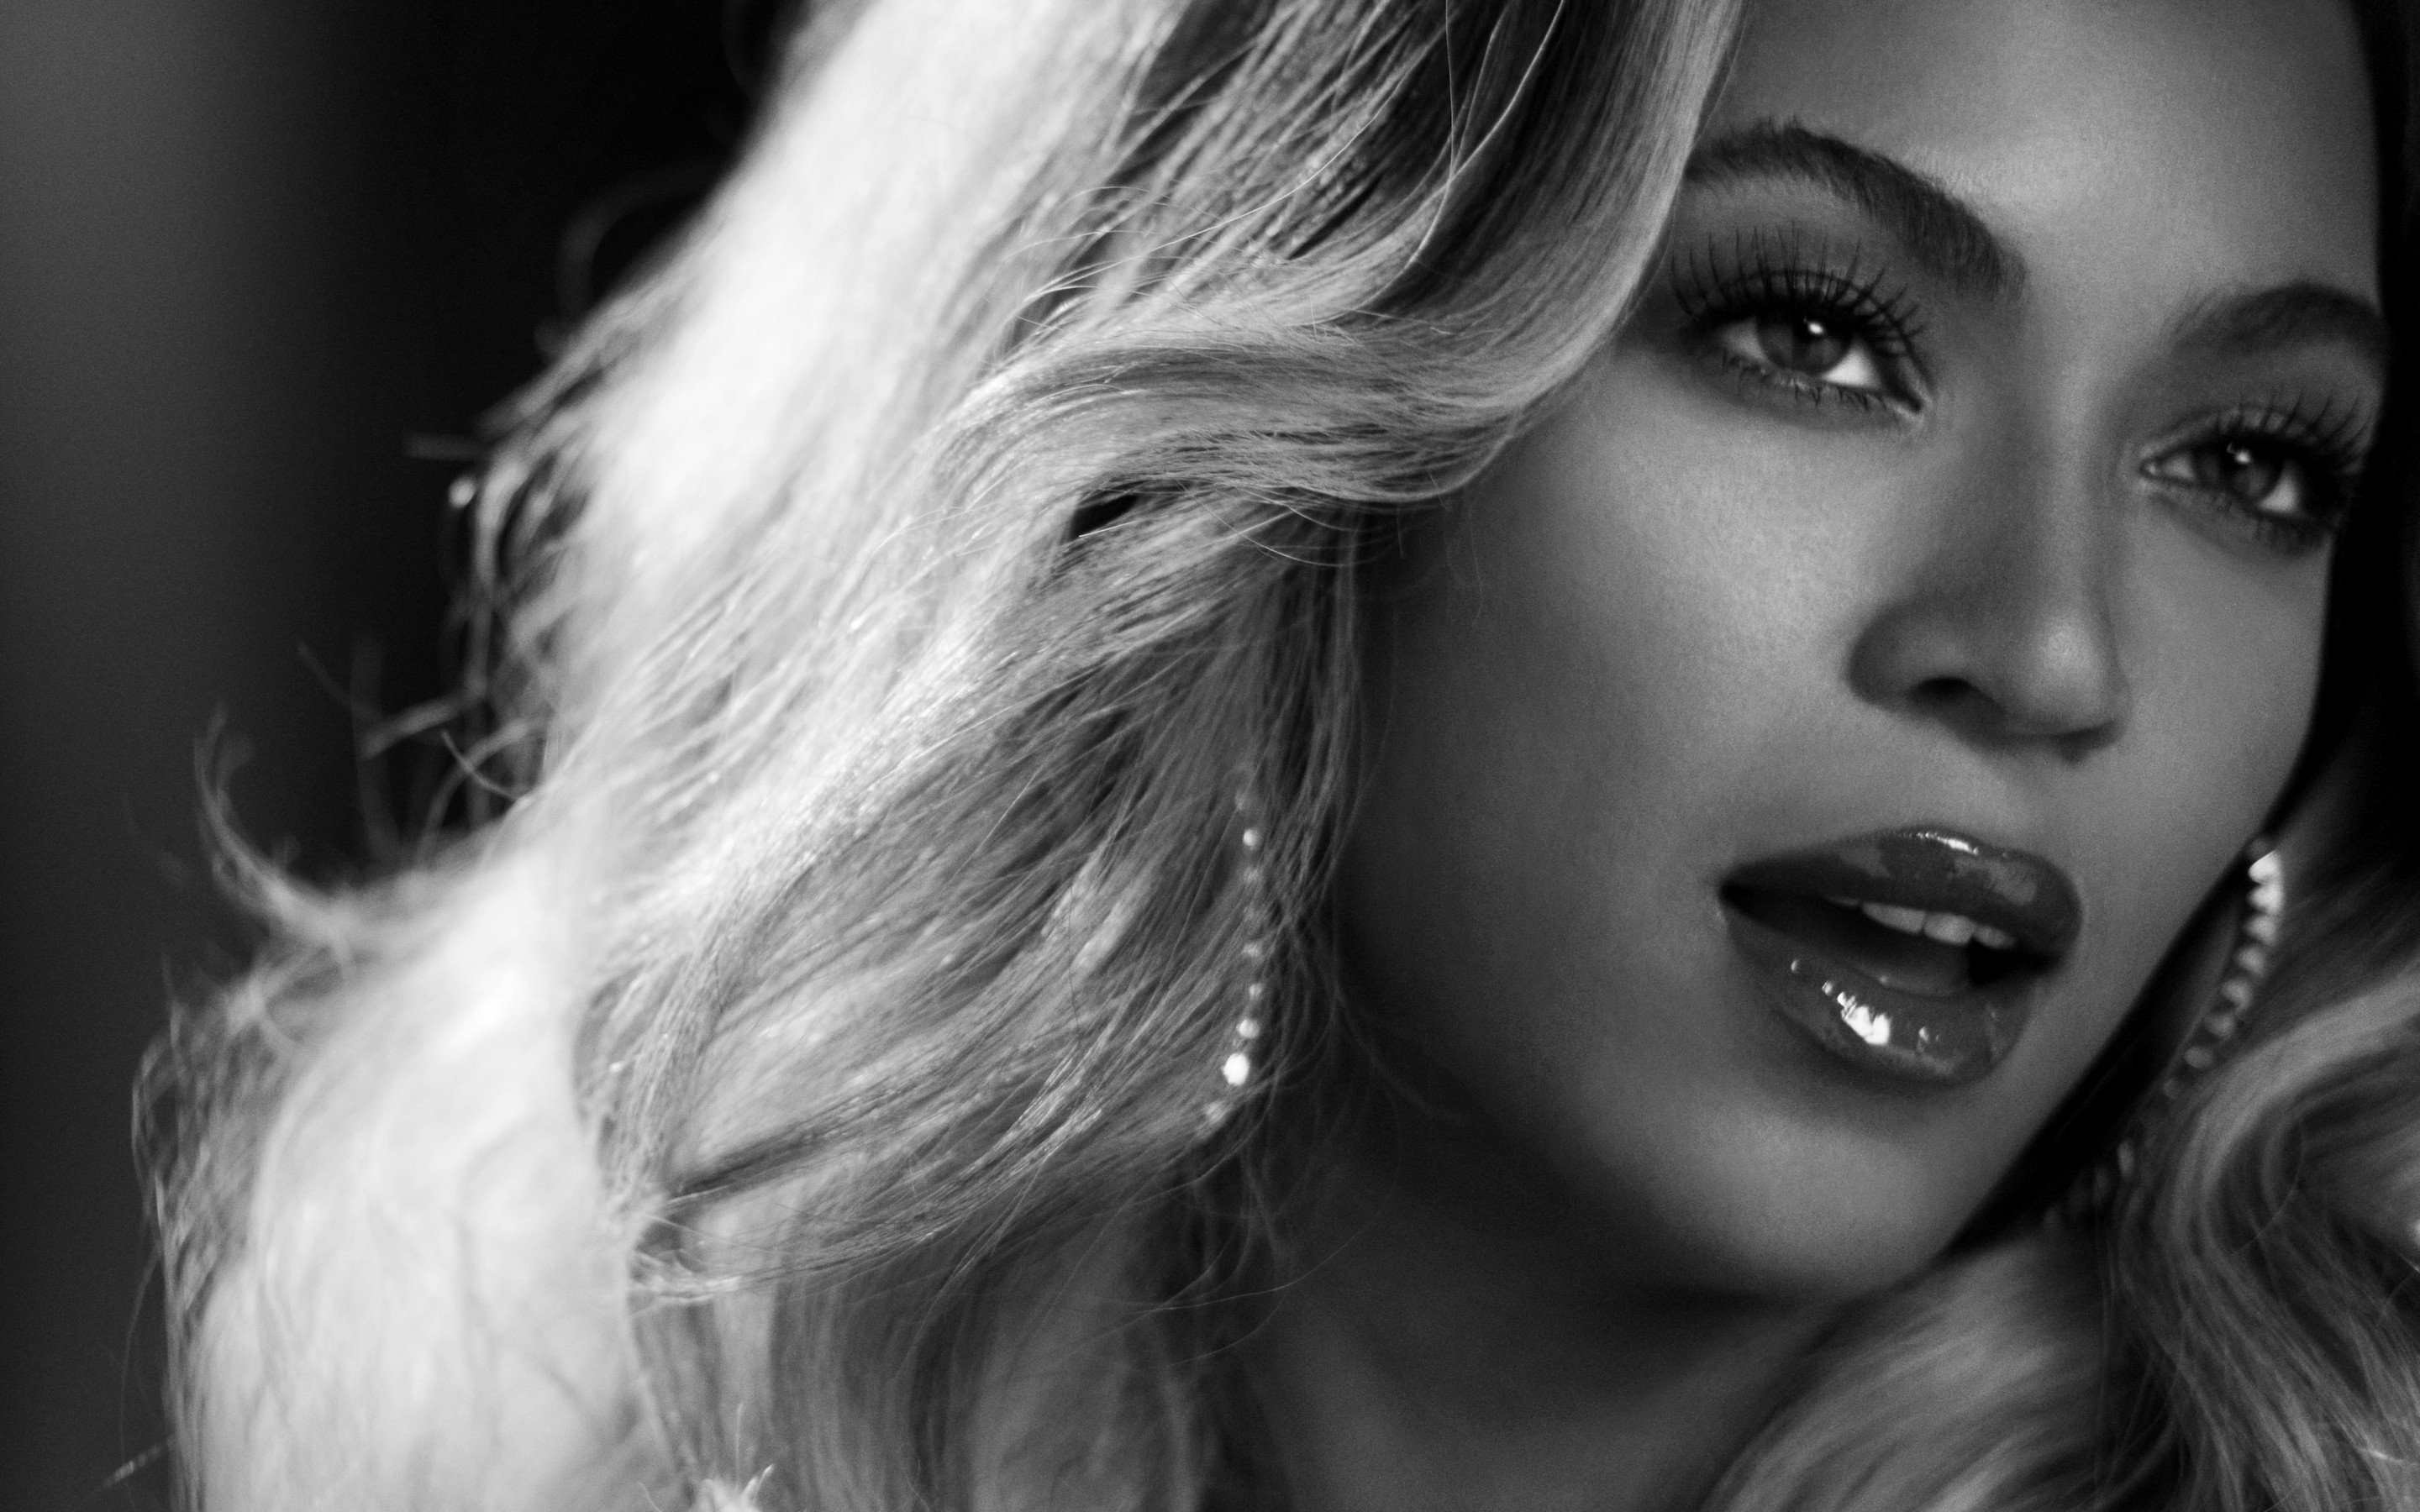 Beyonce in Black & White Wallpaper for Desktop 2880x1800